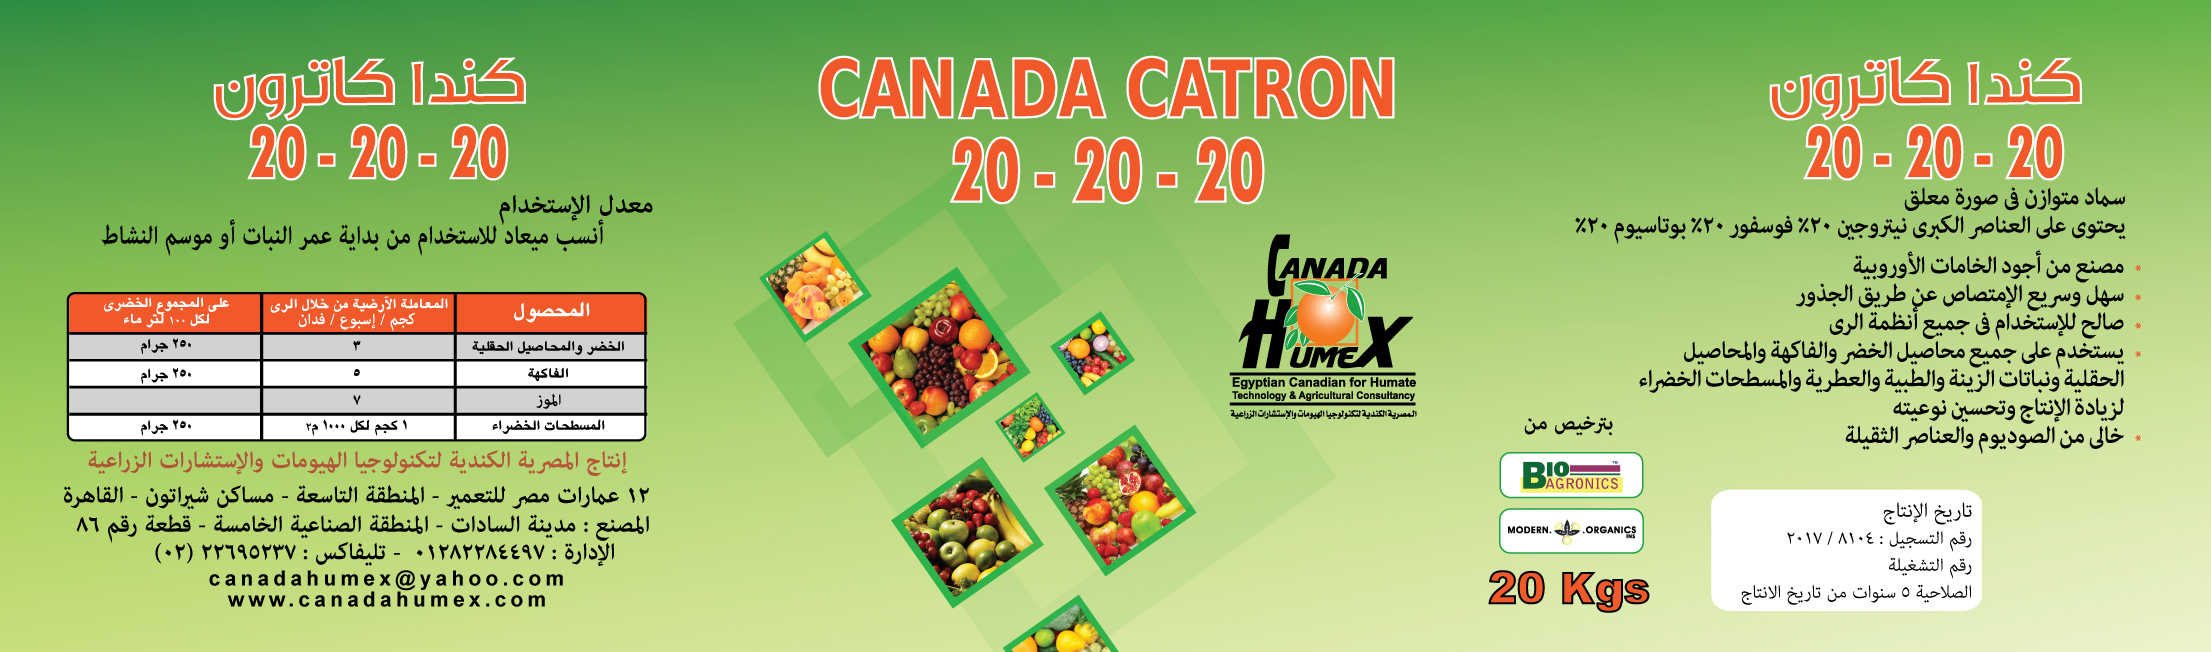 كندا كاترون  20-20-20  Canada Catron 20-20-20